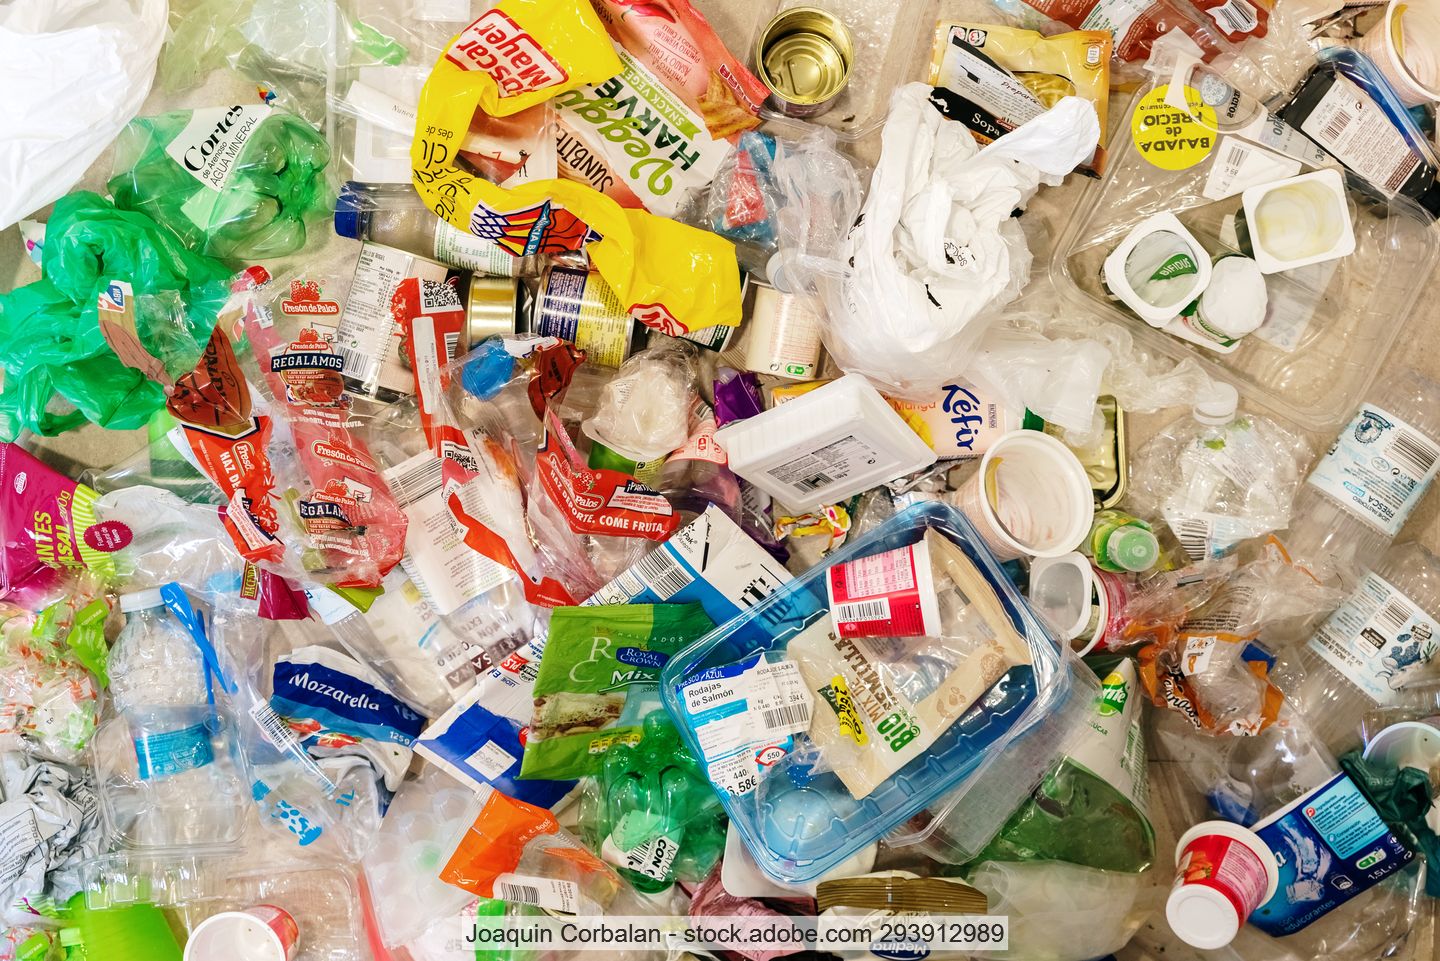 Verschiedene gebrauchte Lebensmittelverpackungen aus Kunststoff, darunter Flaschen, Yoghurtbecher, Schalen und Folien